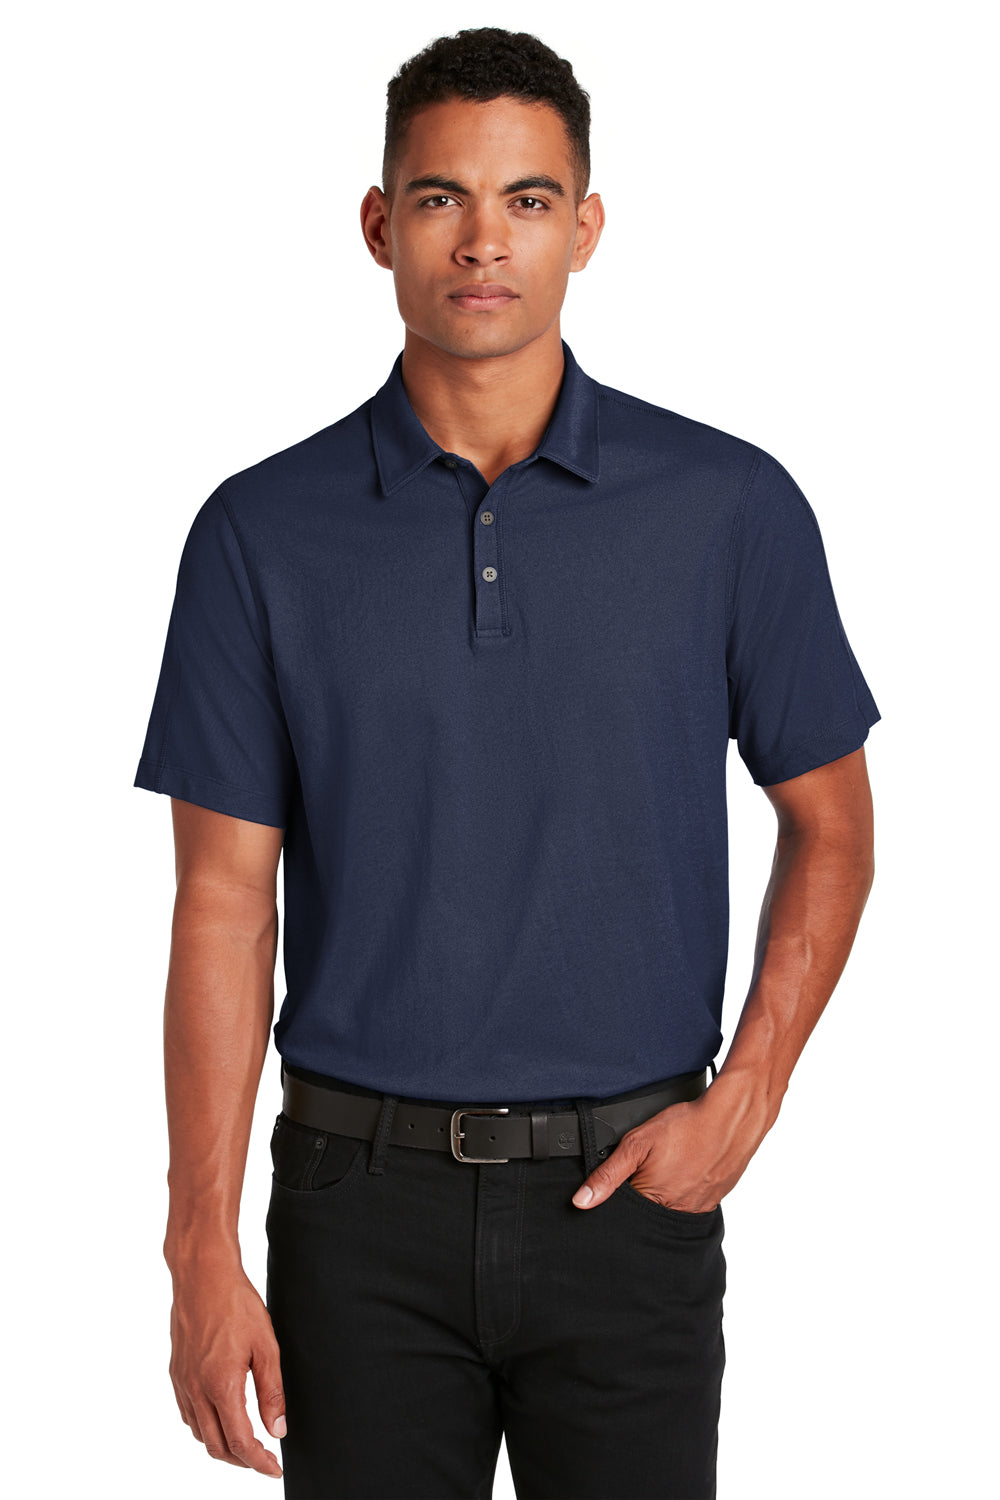 Ogio OG126 Mens Onyx Moisture Wicking Short Sleeve Polo Shirt Navy Blue Front